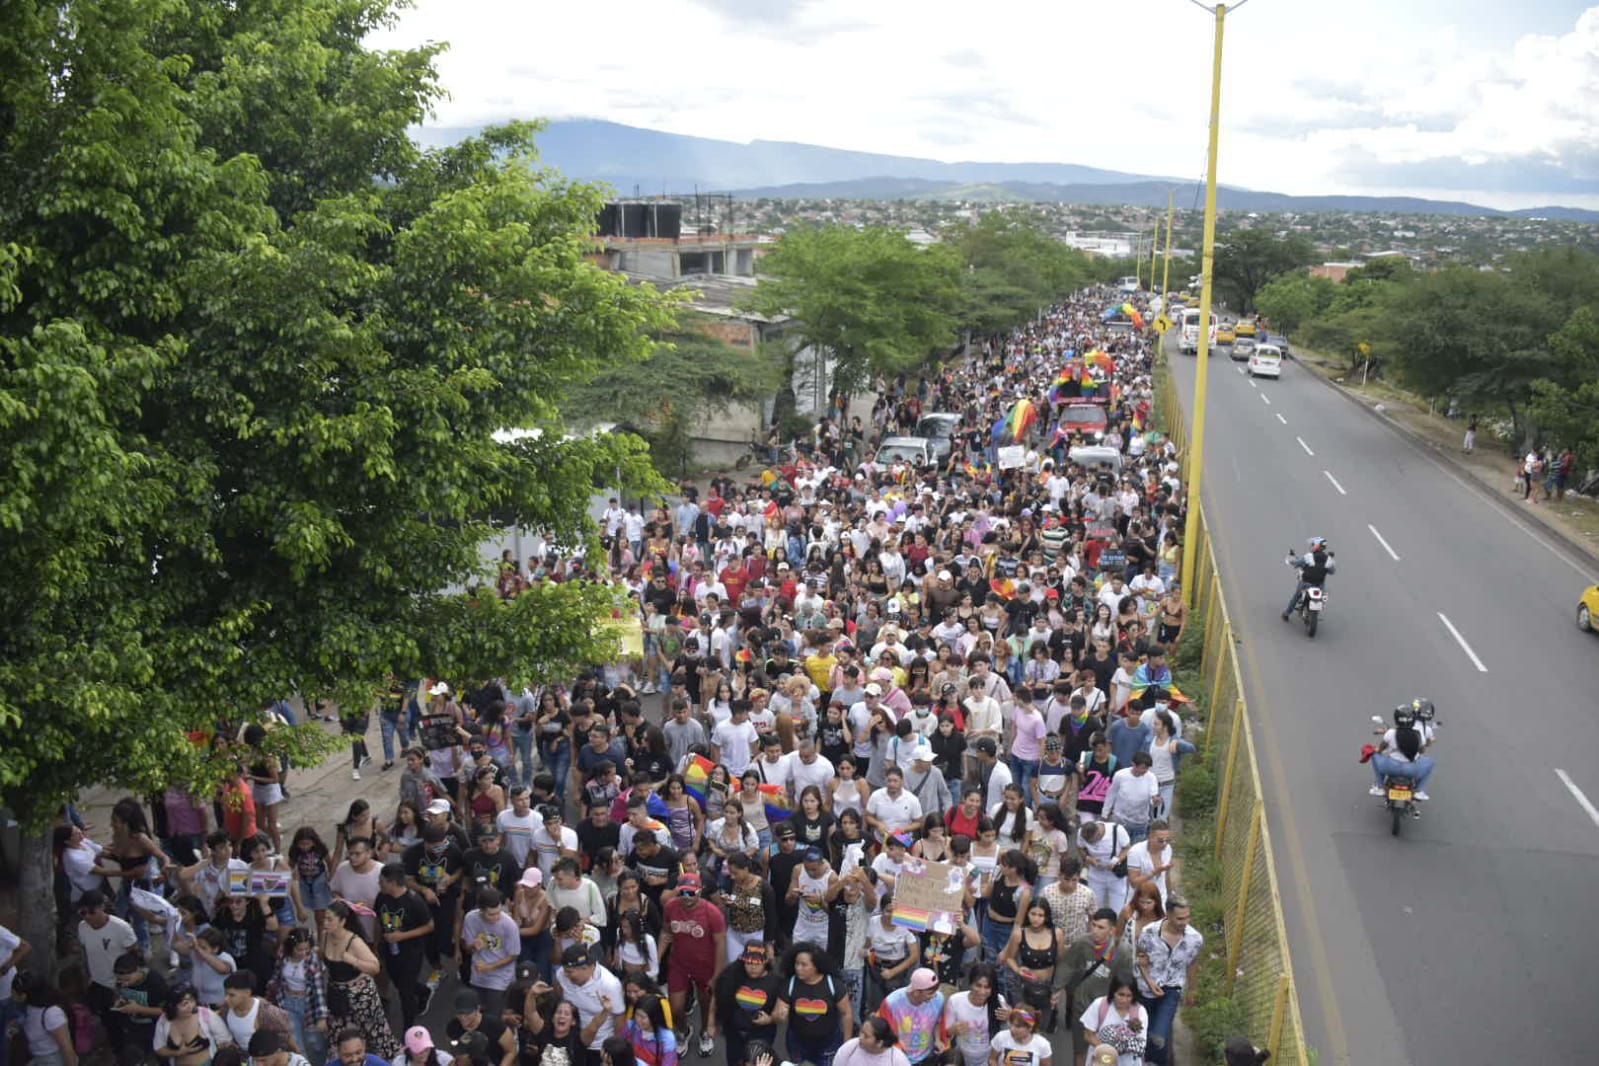 Aunque es grande el grupo de personas que se manifiestan, la tranquilidad ha reinado en la marcha. (Foto Pablo Castillo / La Opinión)